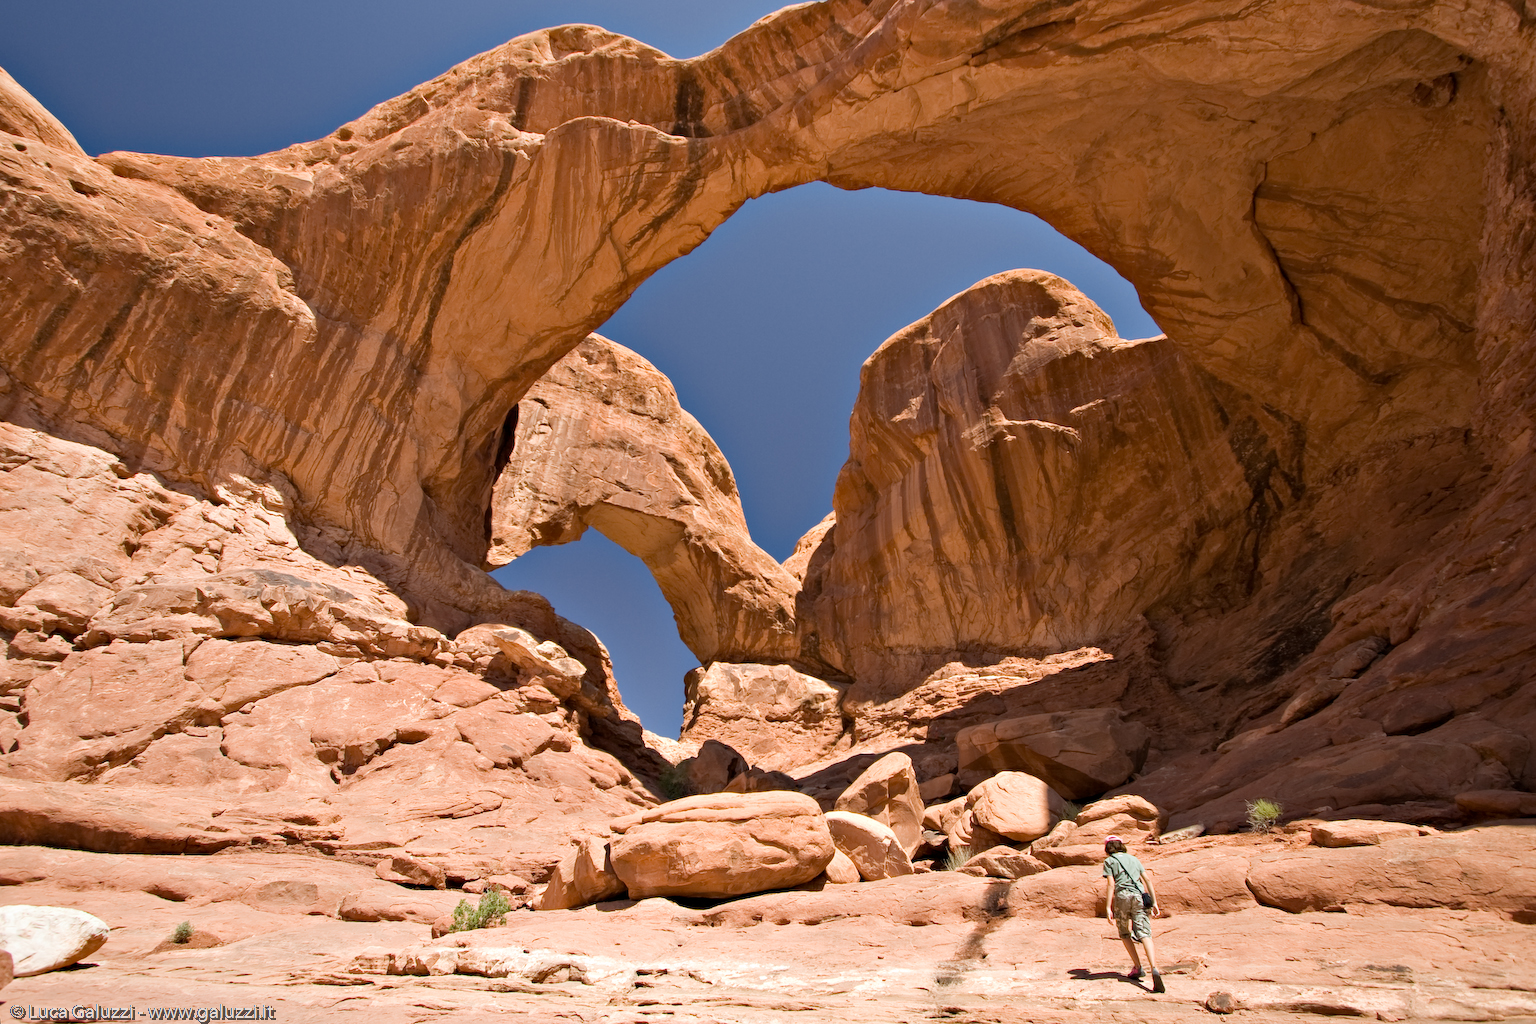 Double Arch, formazione costituita da due archi ravvicinati nell'Arches National Park in Utah